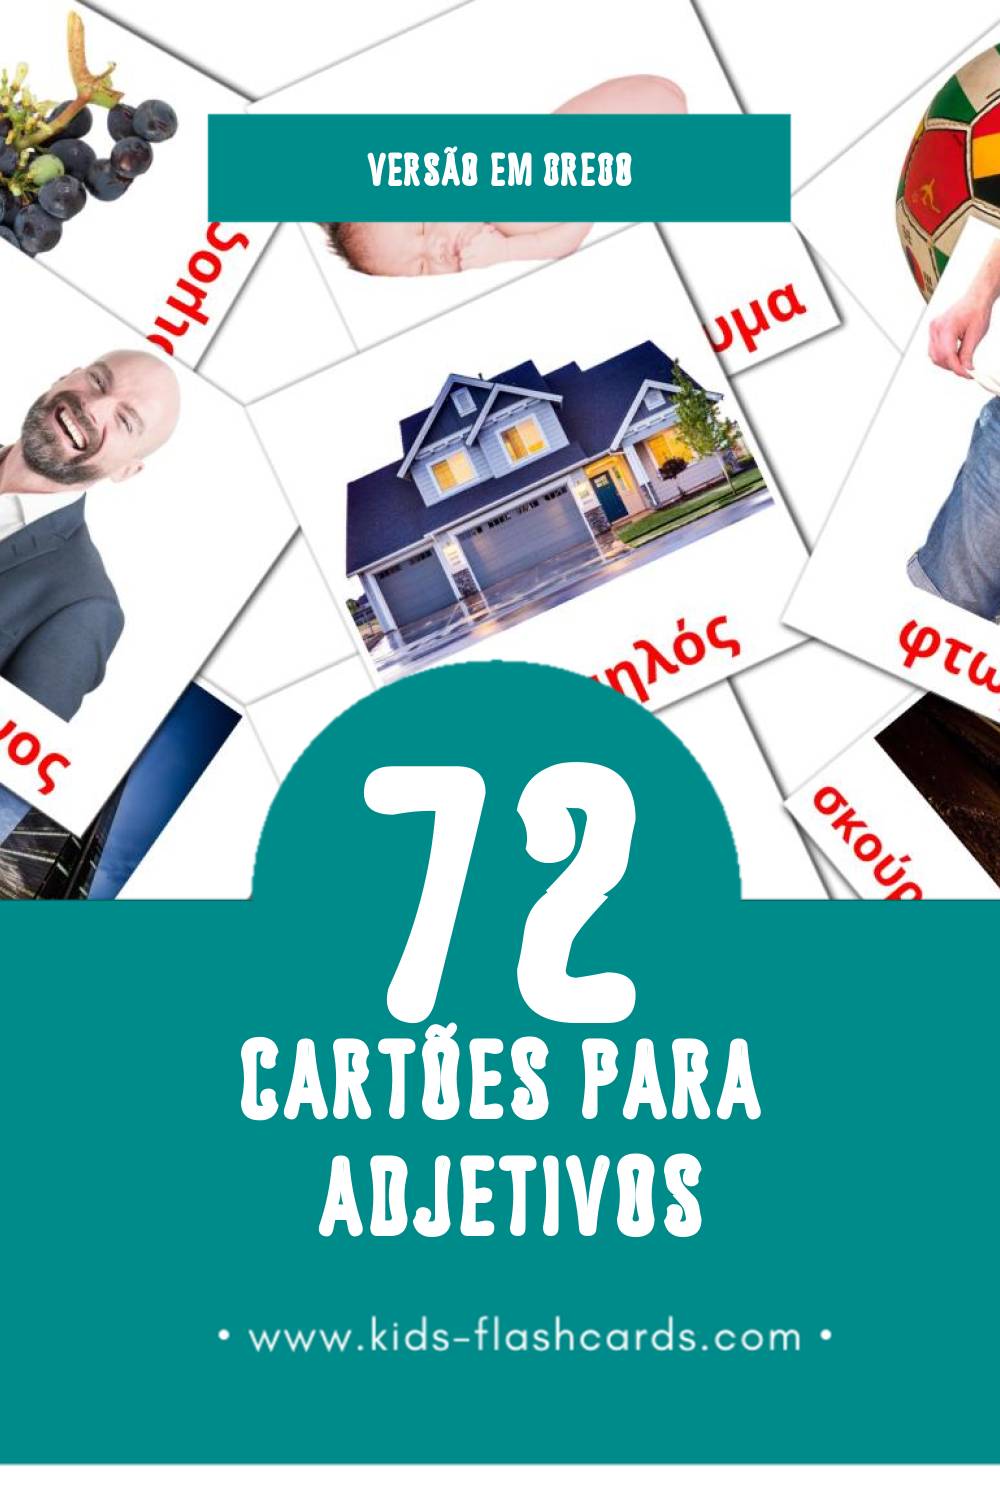 Flashcards de επίθετο Visuais para Toddlers (72 cartões em Grego)